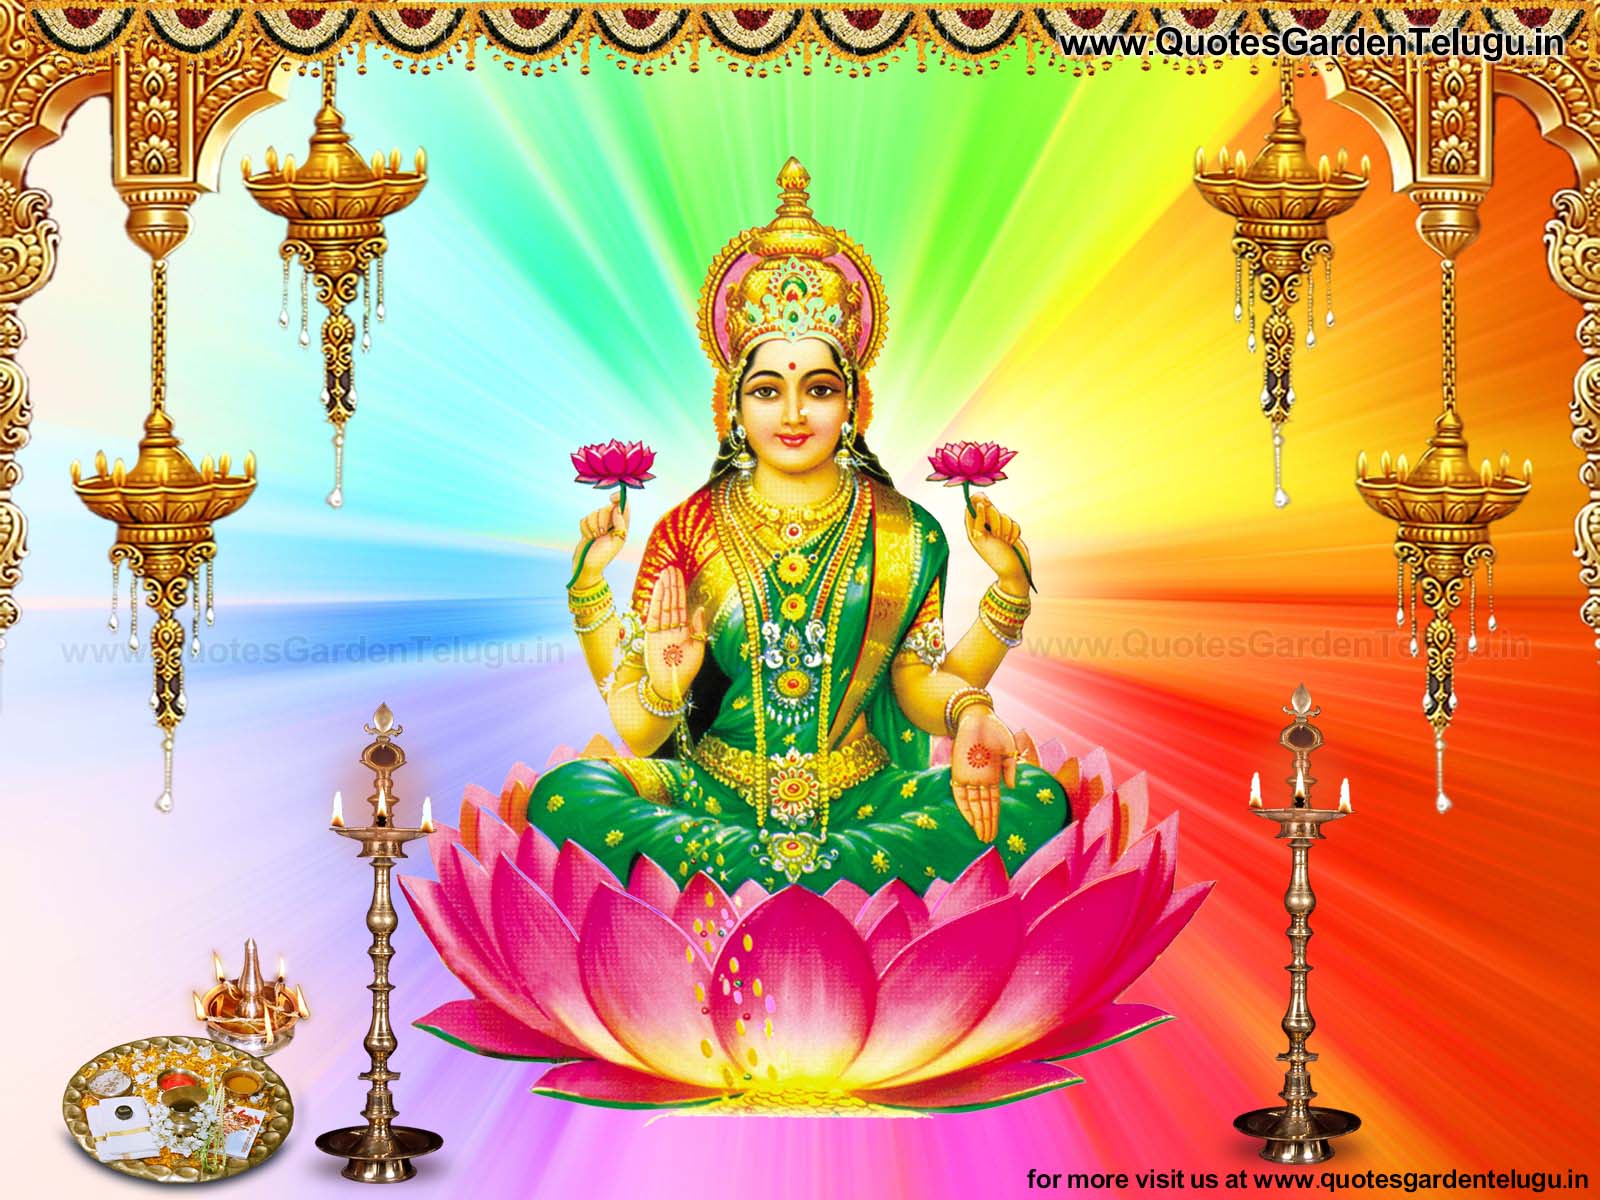 신 mahalakshmi의 hd 배경 화면,축복,디 왈리,행사,예배 장소,신전